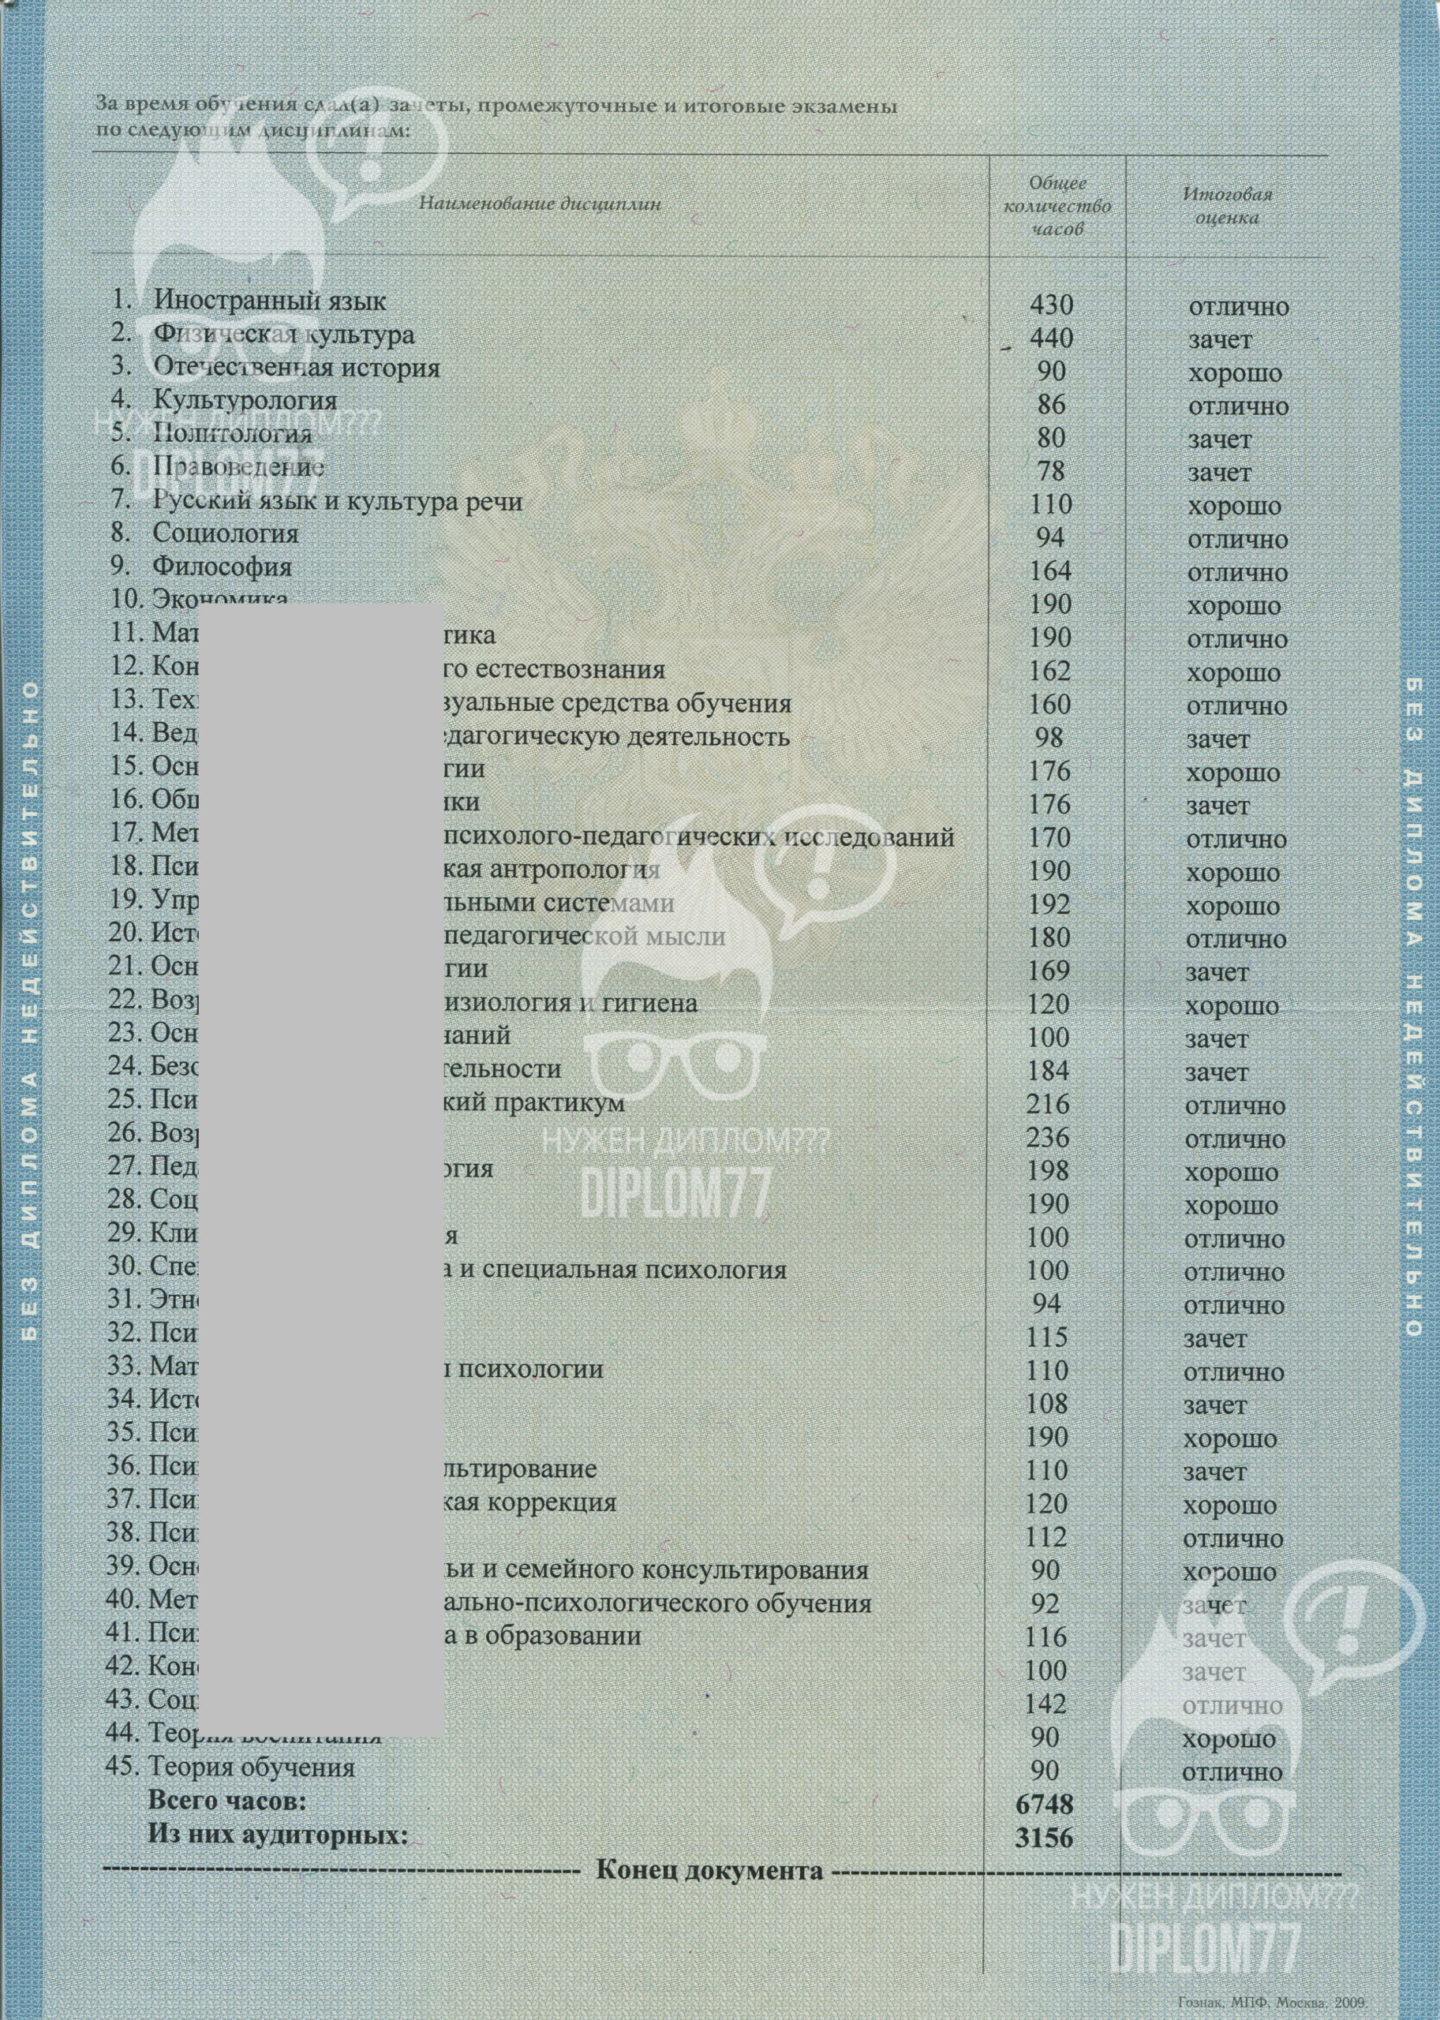 Оценки диплома МПГУ специальности Дошкольное образование 2009 г.